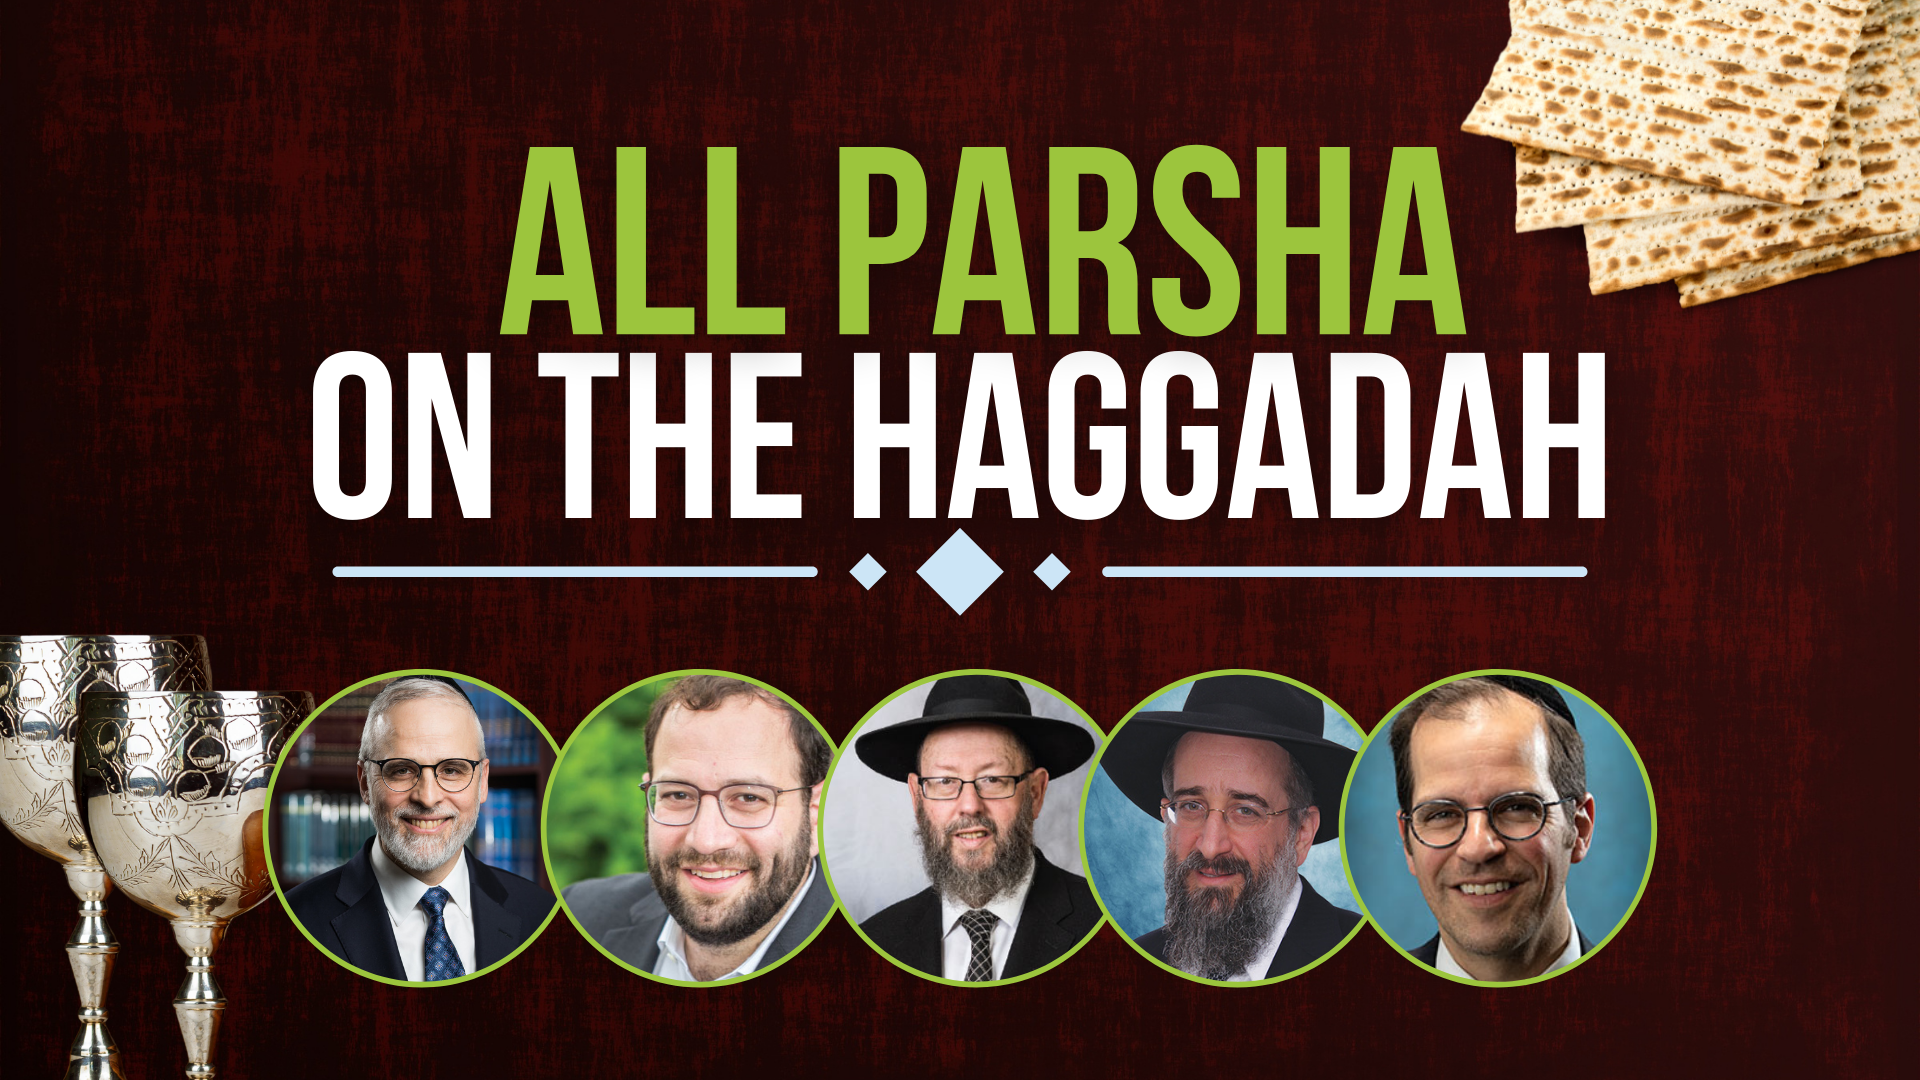 All Parsha On The Haggadah